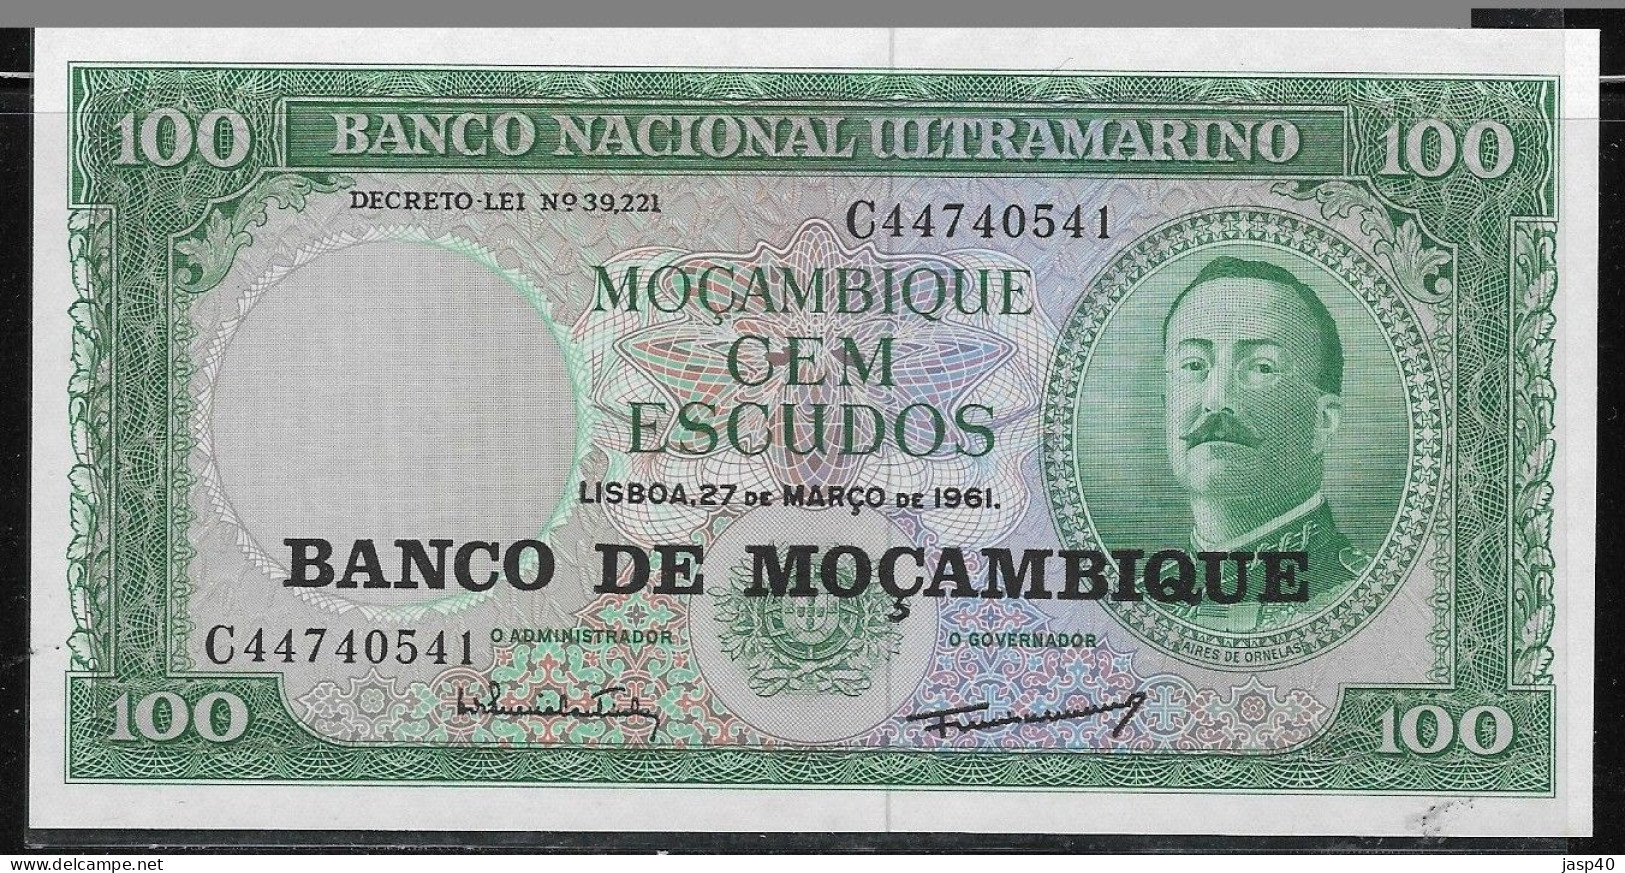 MOÇAMBIQUE - 100 ESCUDOS DE 1961 - COM ARMAS NA MARCA DE ÁGUA - Moçambique